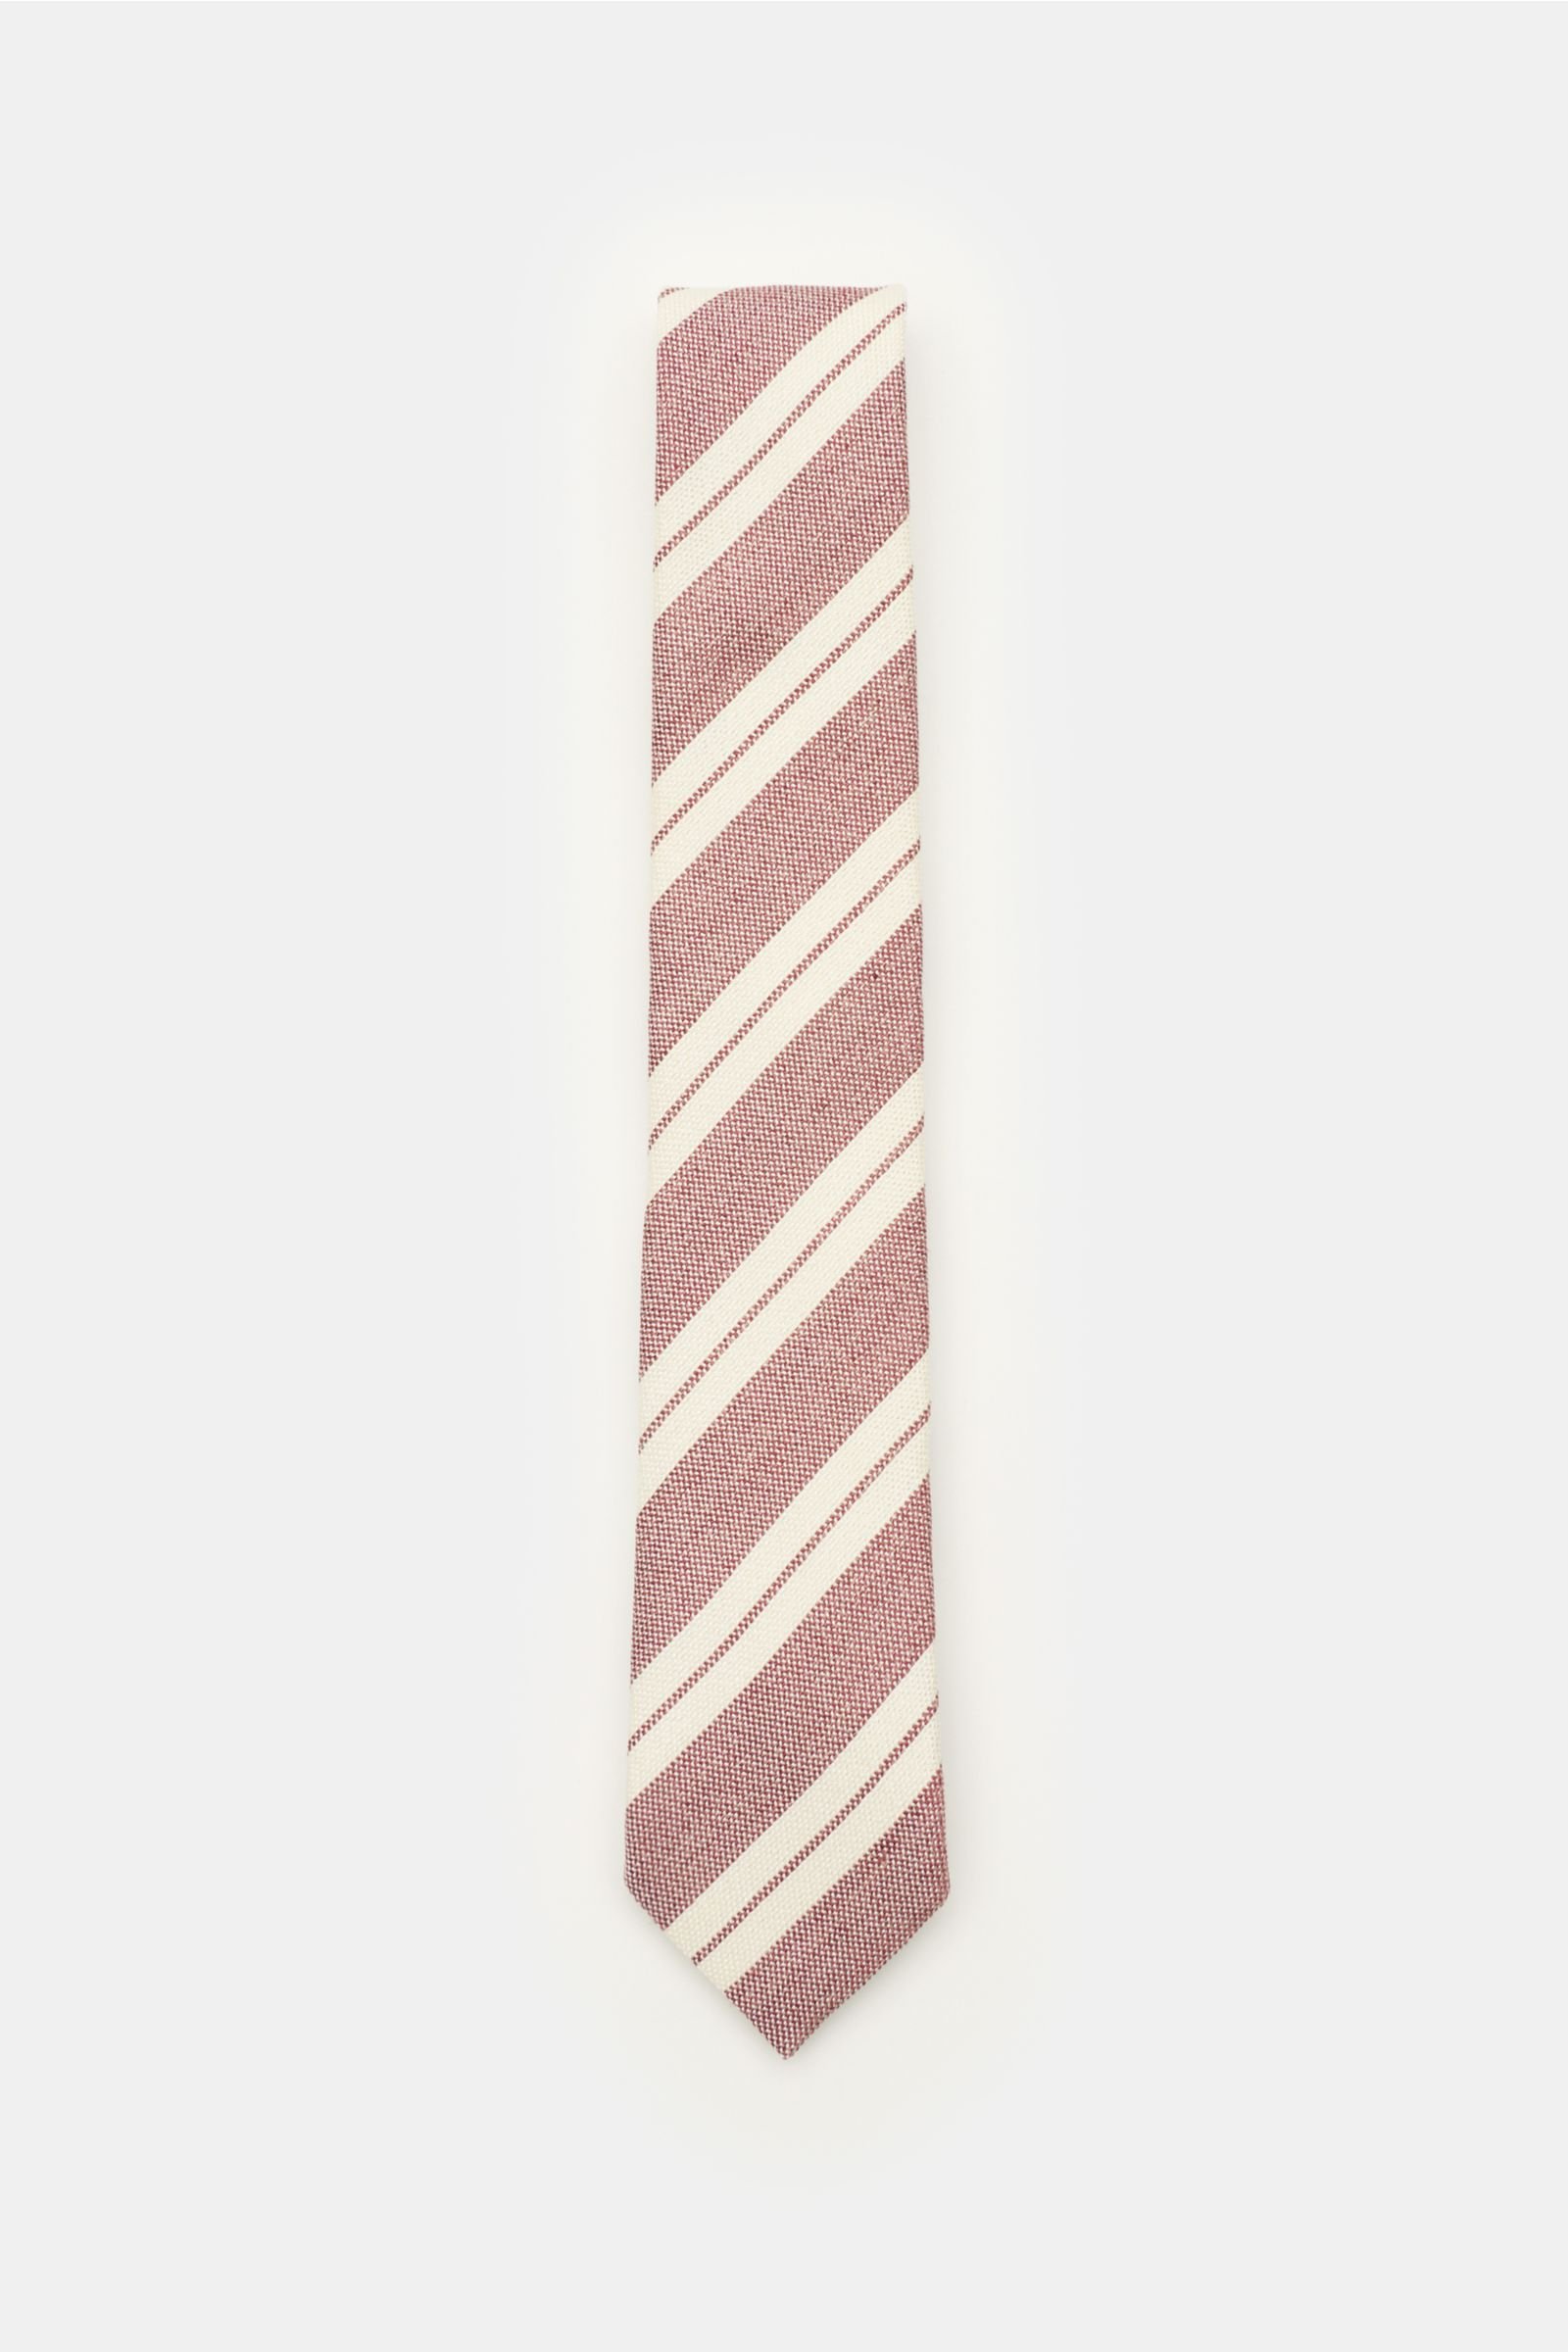 Krawatte altrosa/creme gestreift